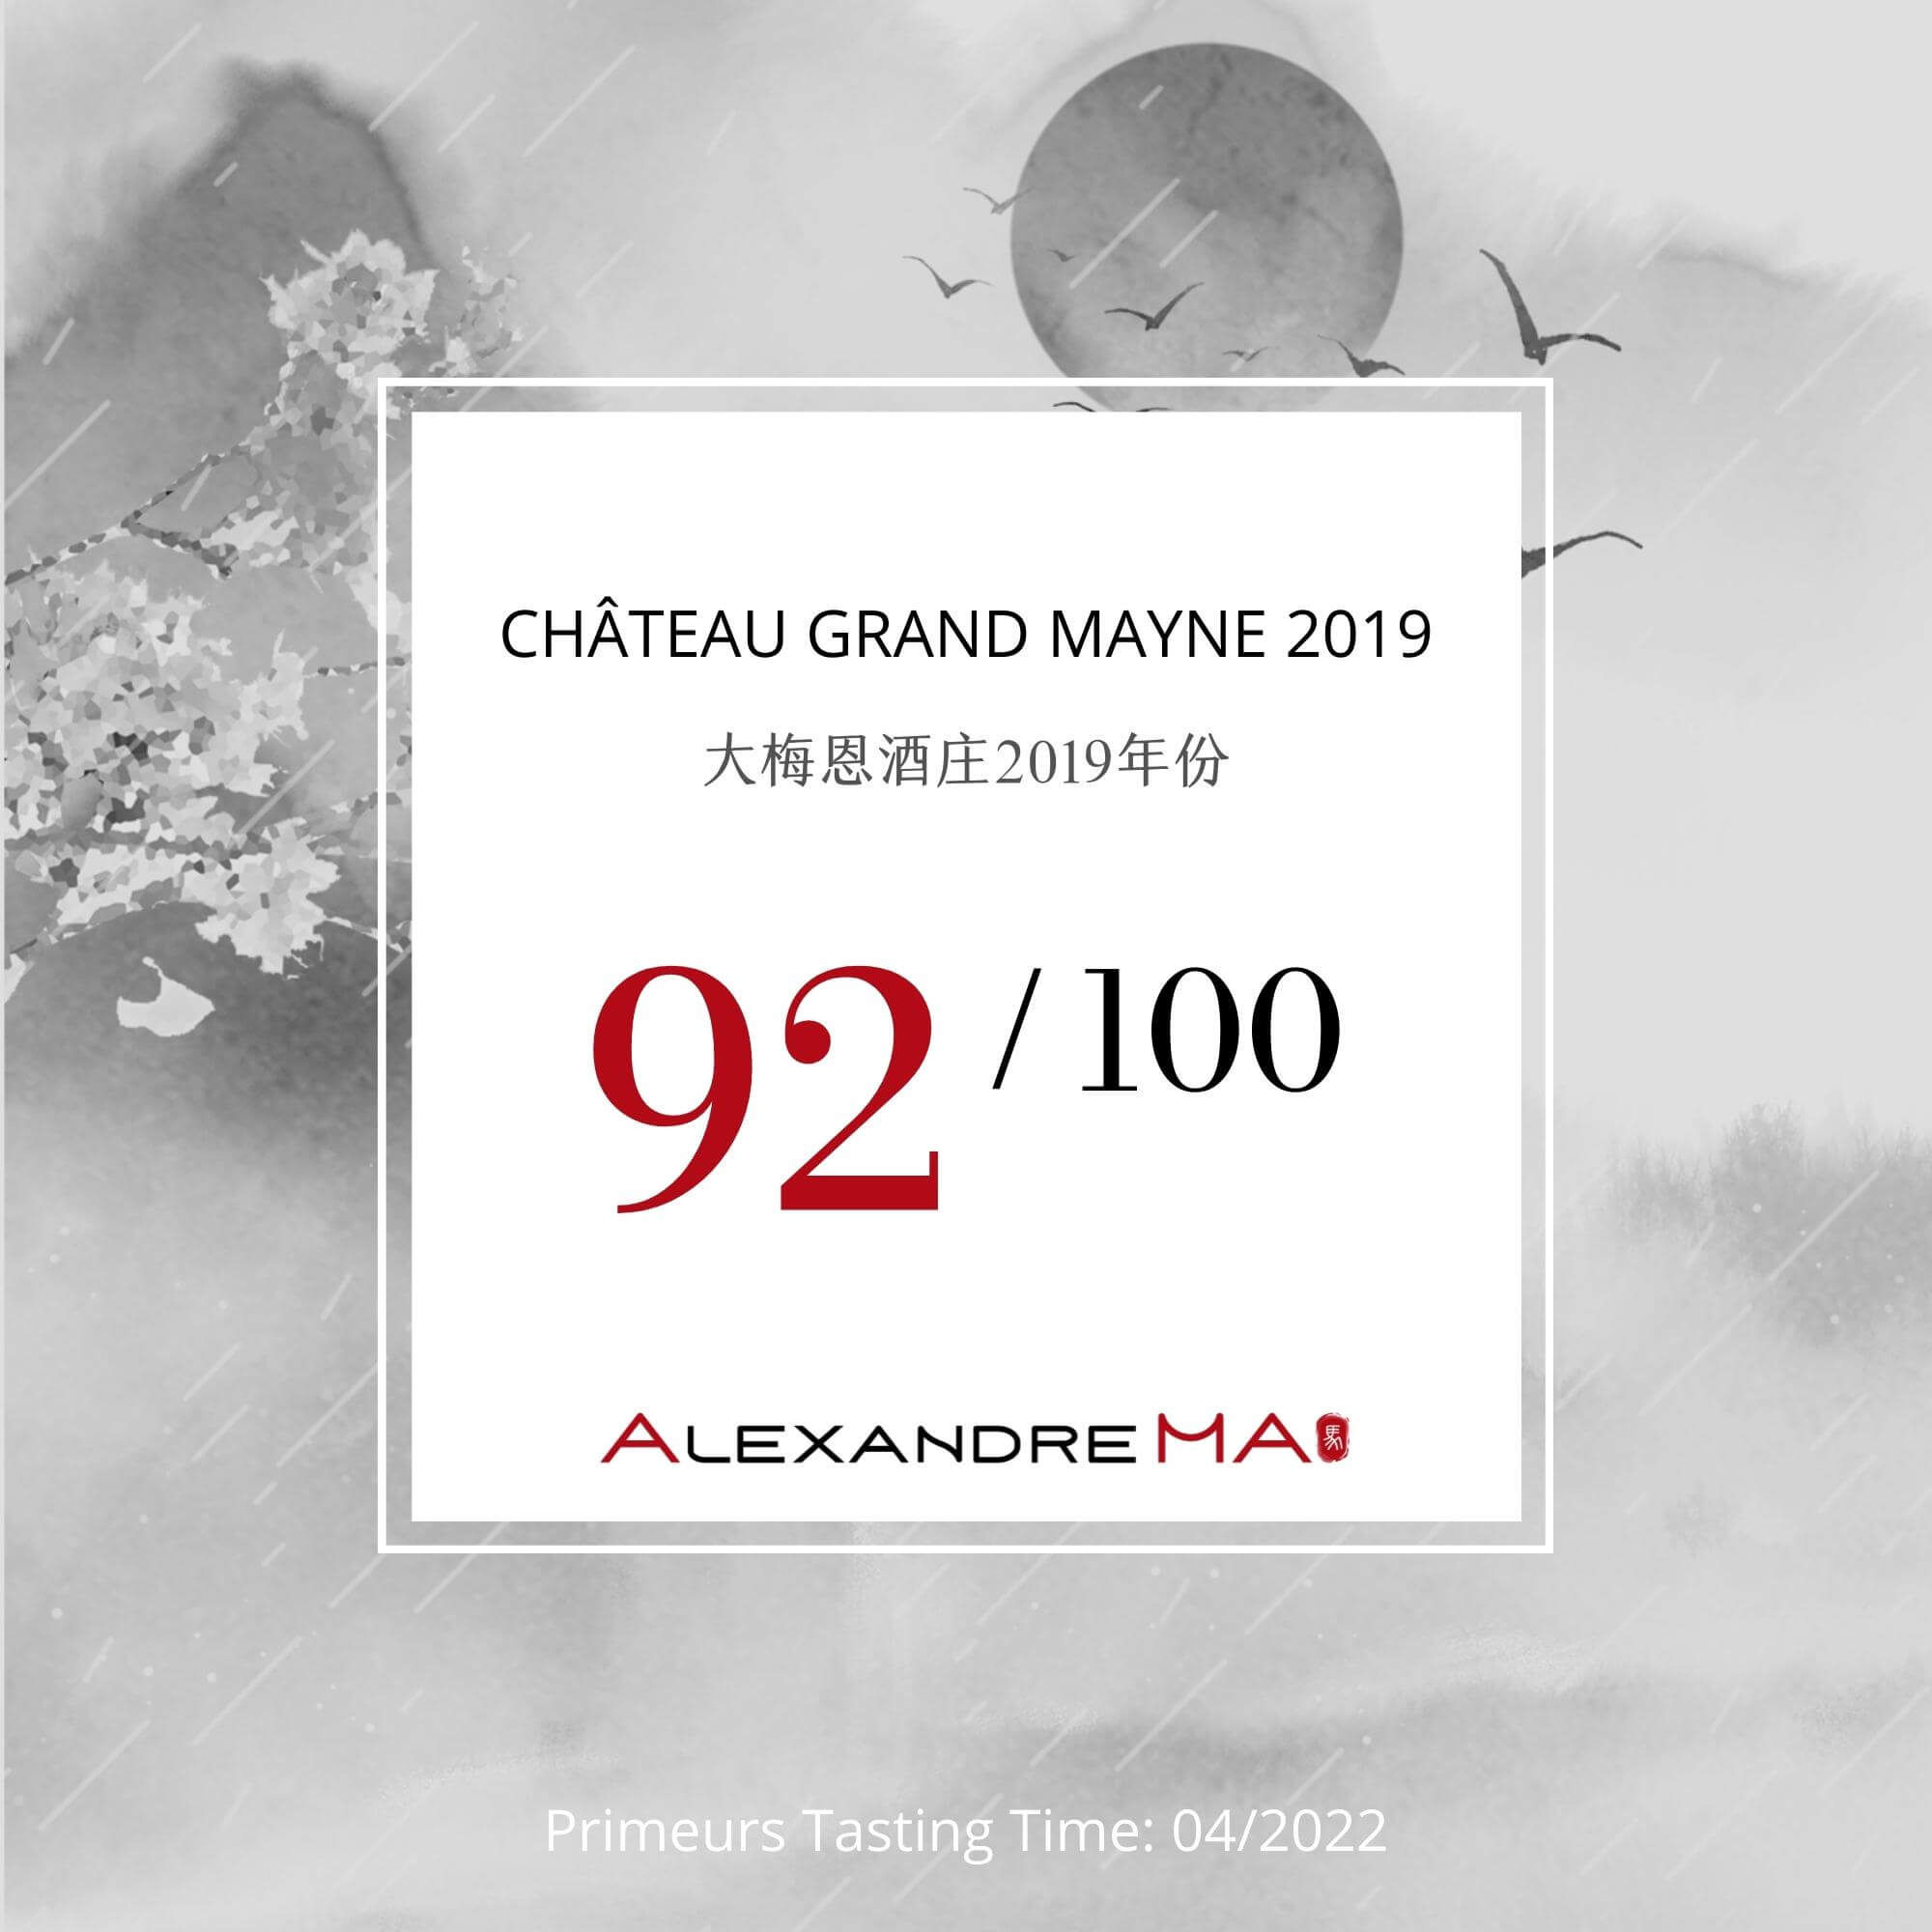 Château Grand Mayne 2019 - Alexandre MA